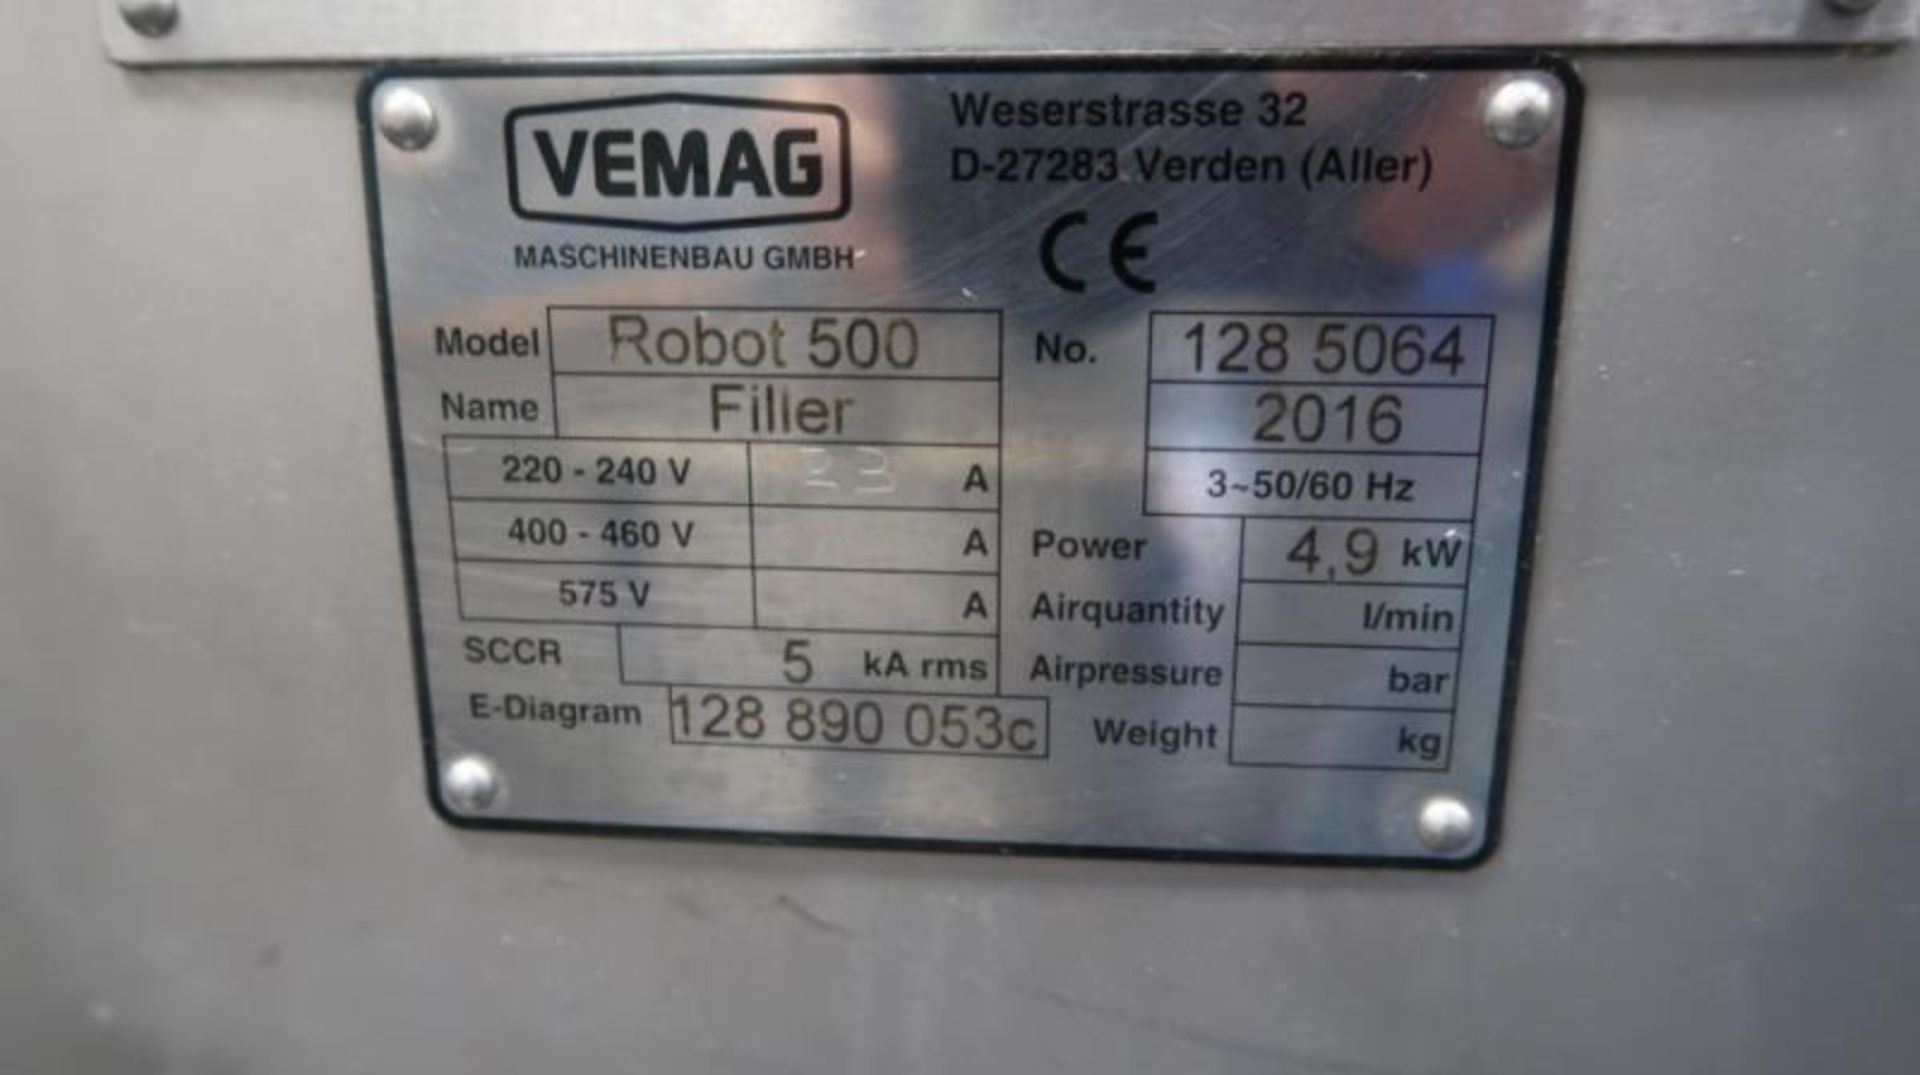 2016 Vemag Filler/Stuffer Model Robot 500 - Image 6 of 6